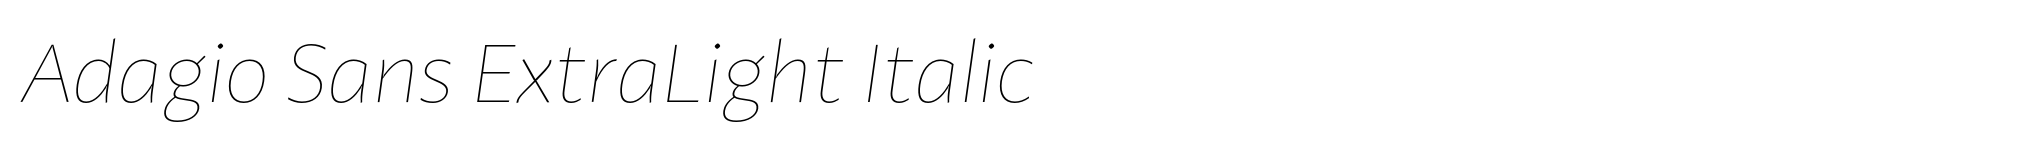 Adagio Sans ExtraLight Italic image